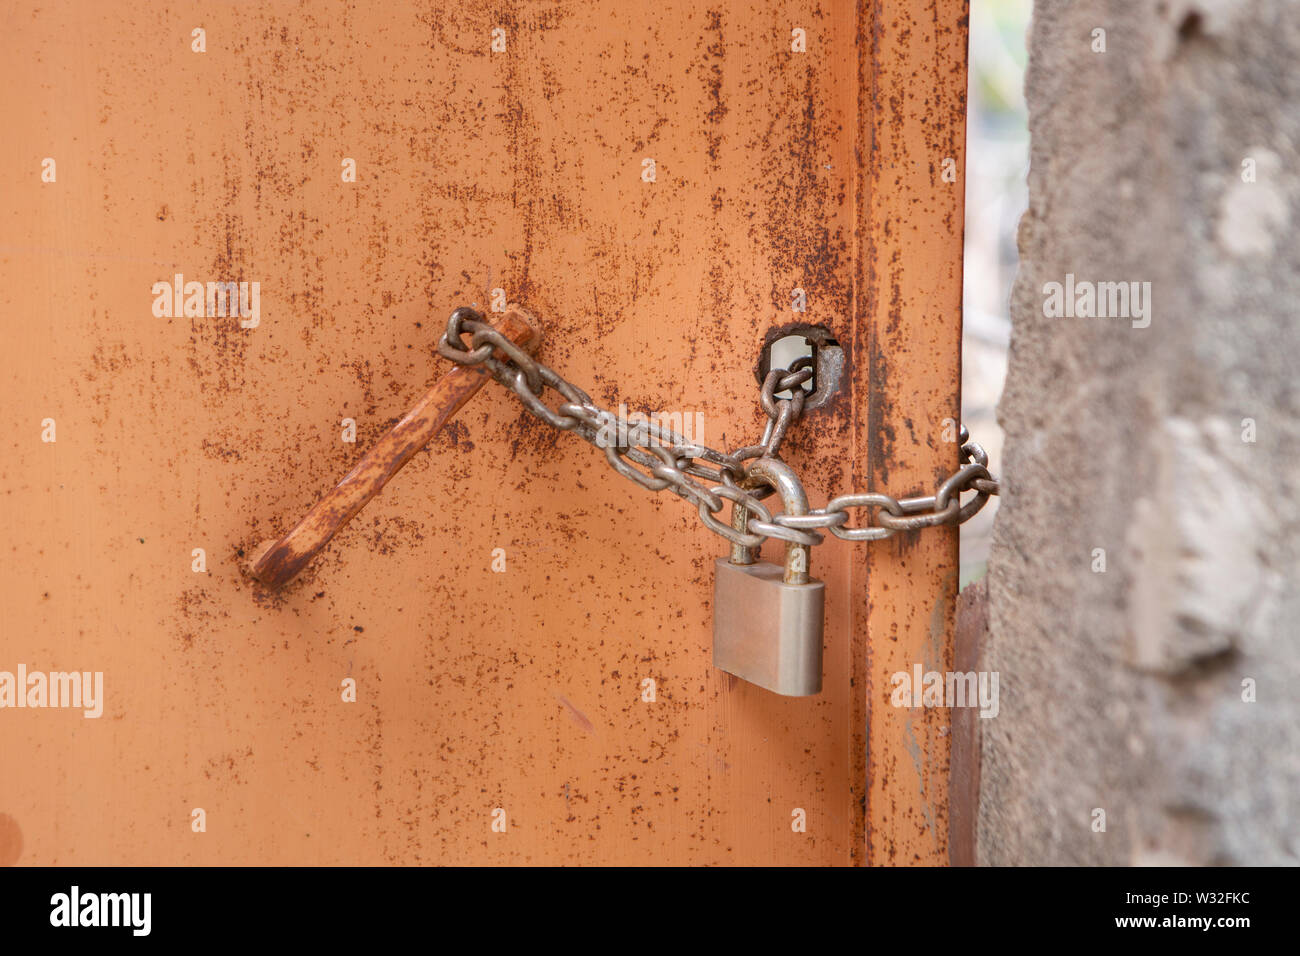 barricaded rusty door with door lock and chain Stock Photo